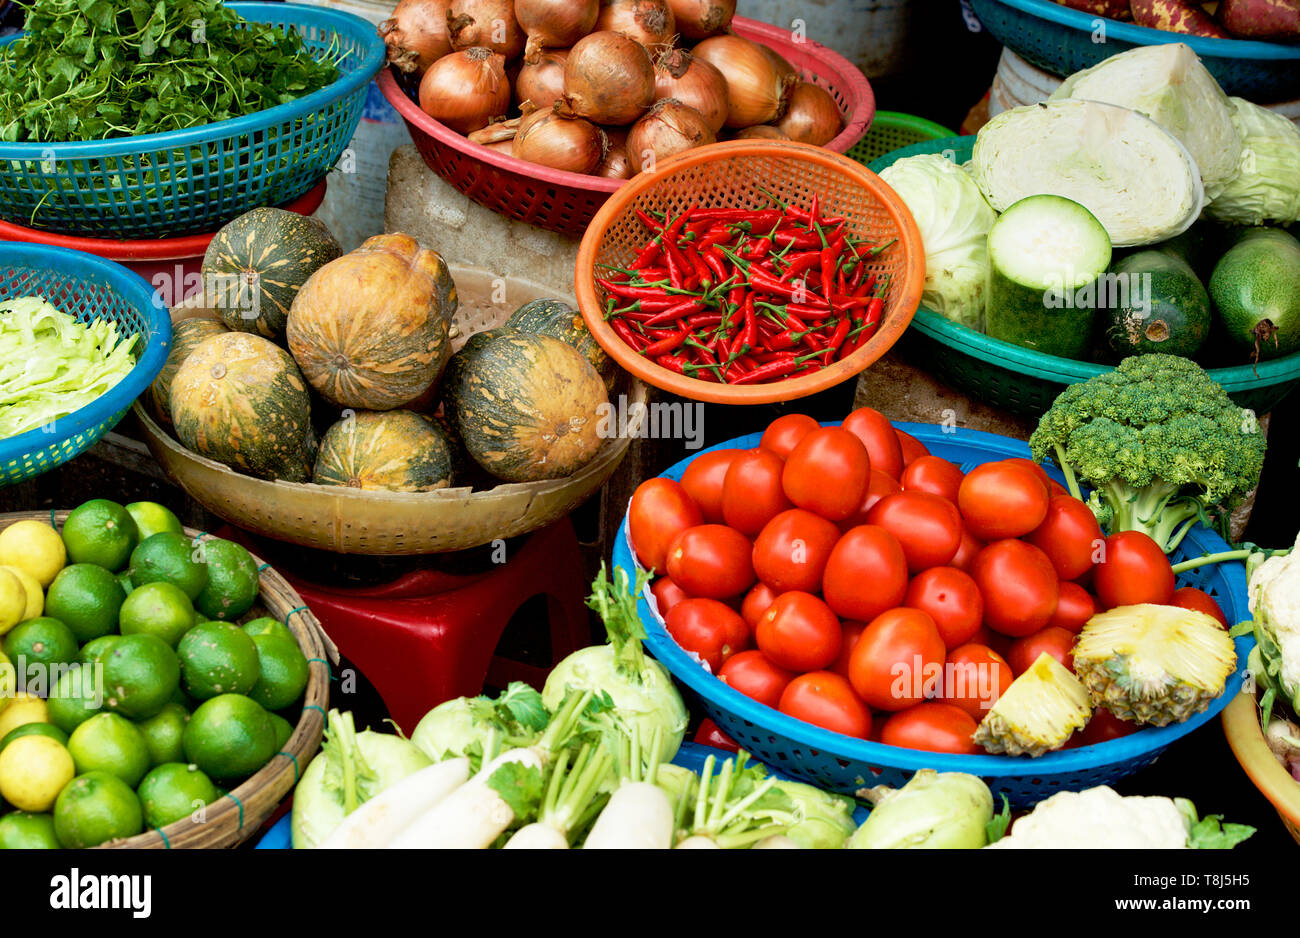 Les fruits et légumes à vendre at a market stall, Vietnam Banque D'Images